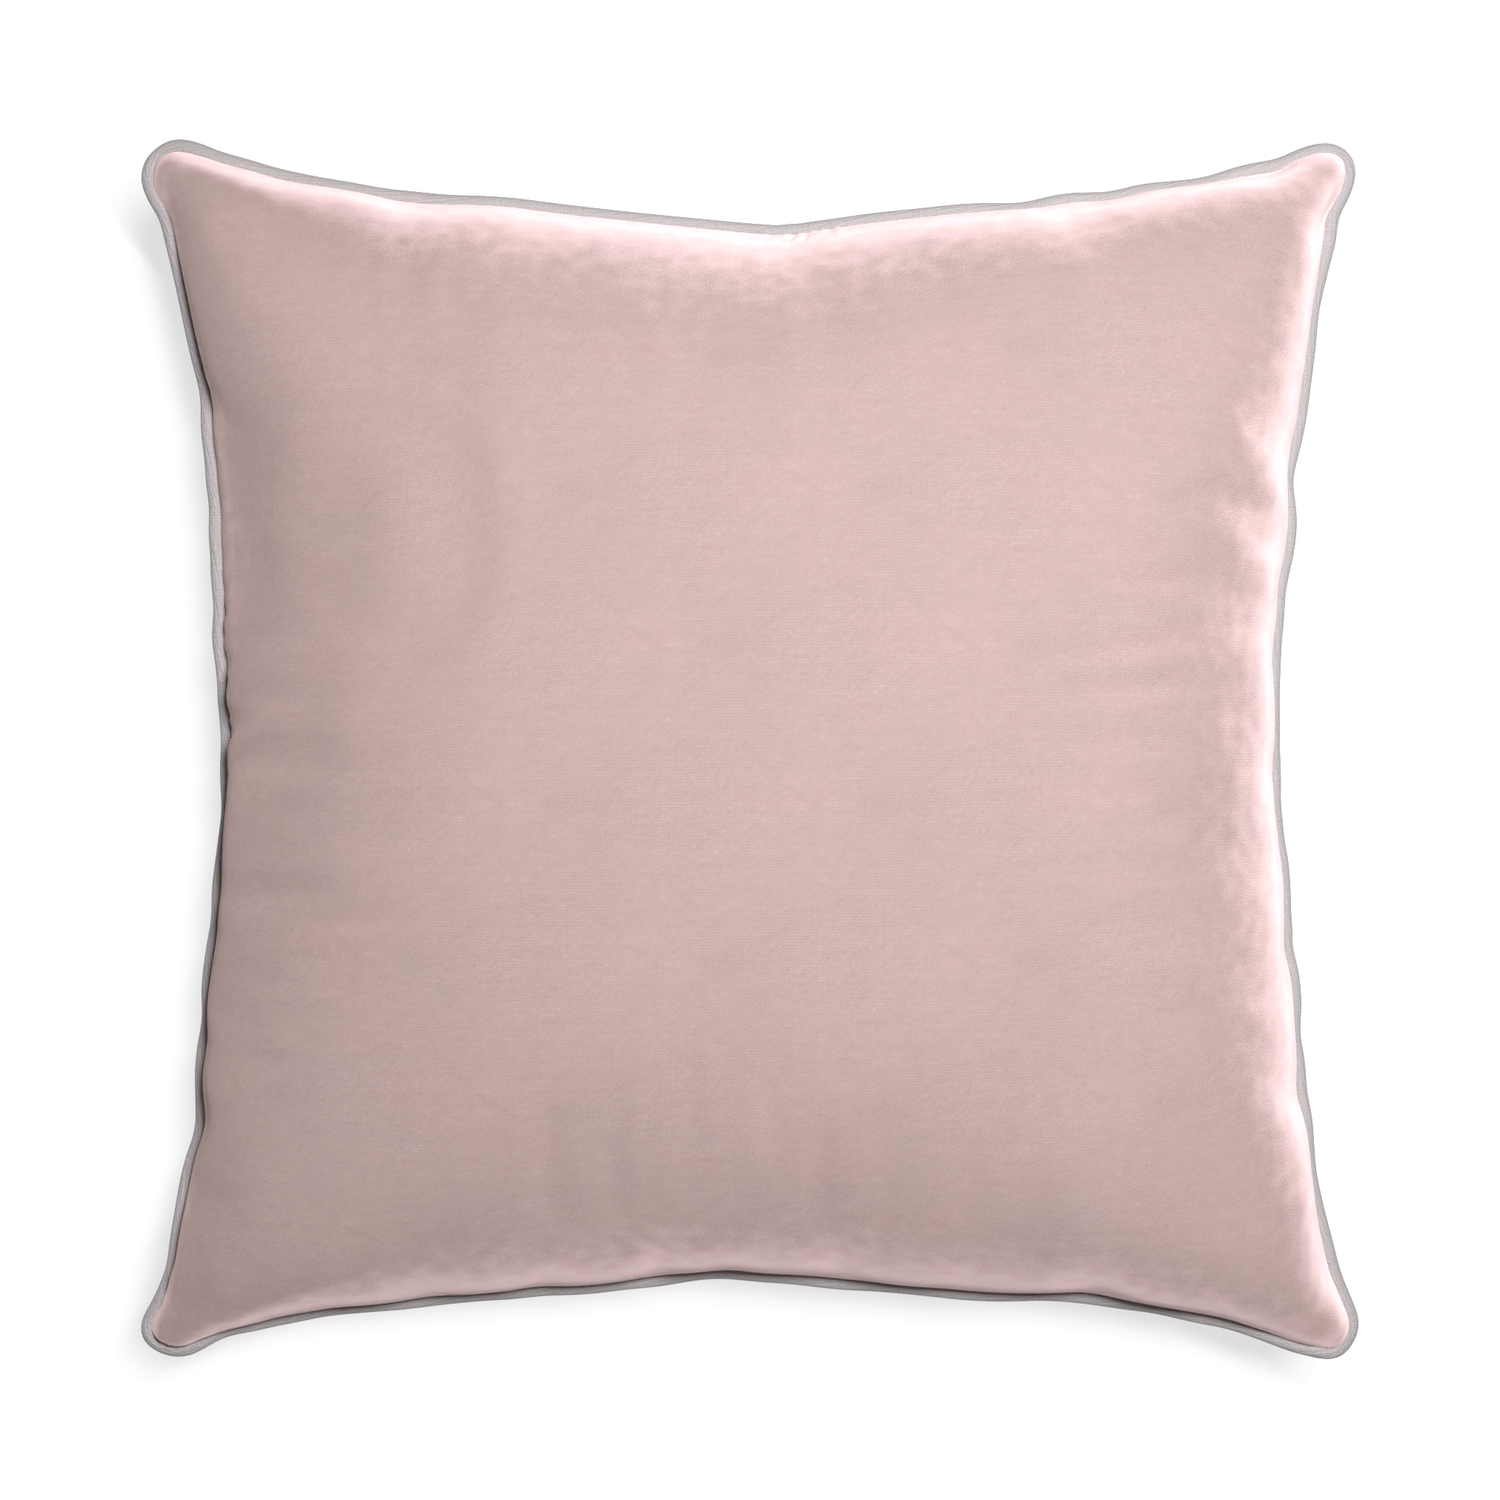 Euro-sham rose velvet custom pillow with pebble piping on white background